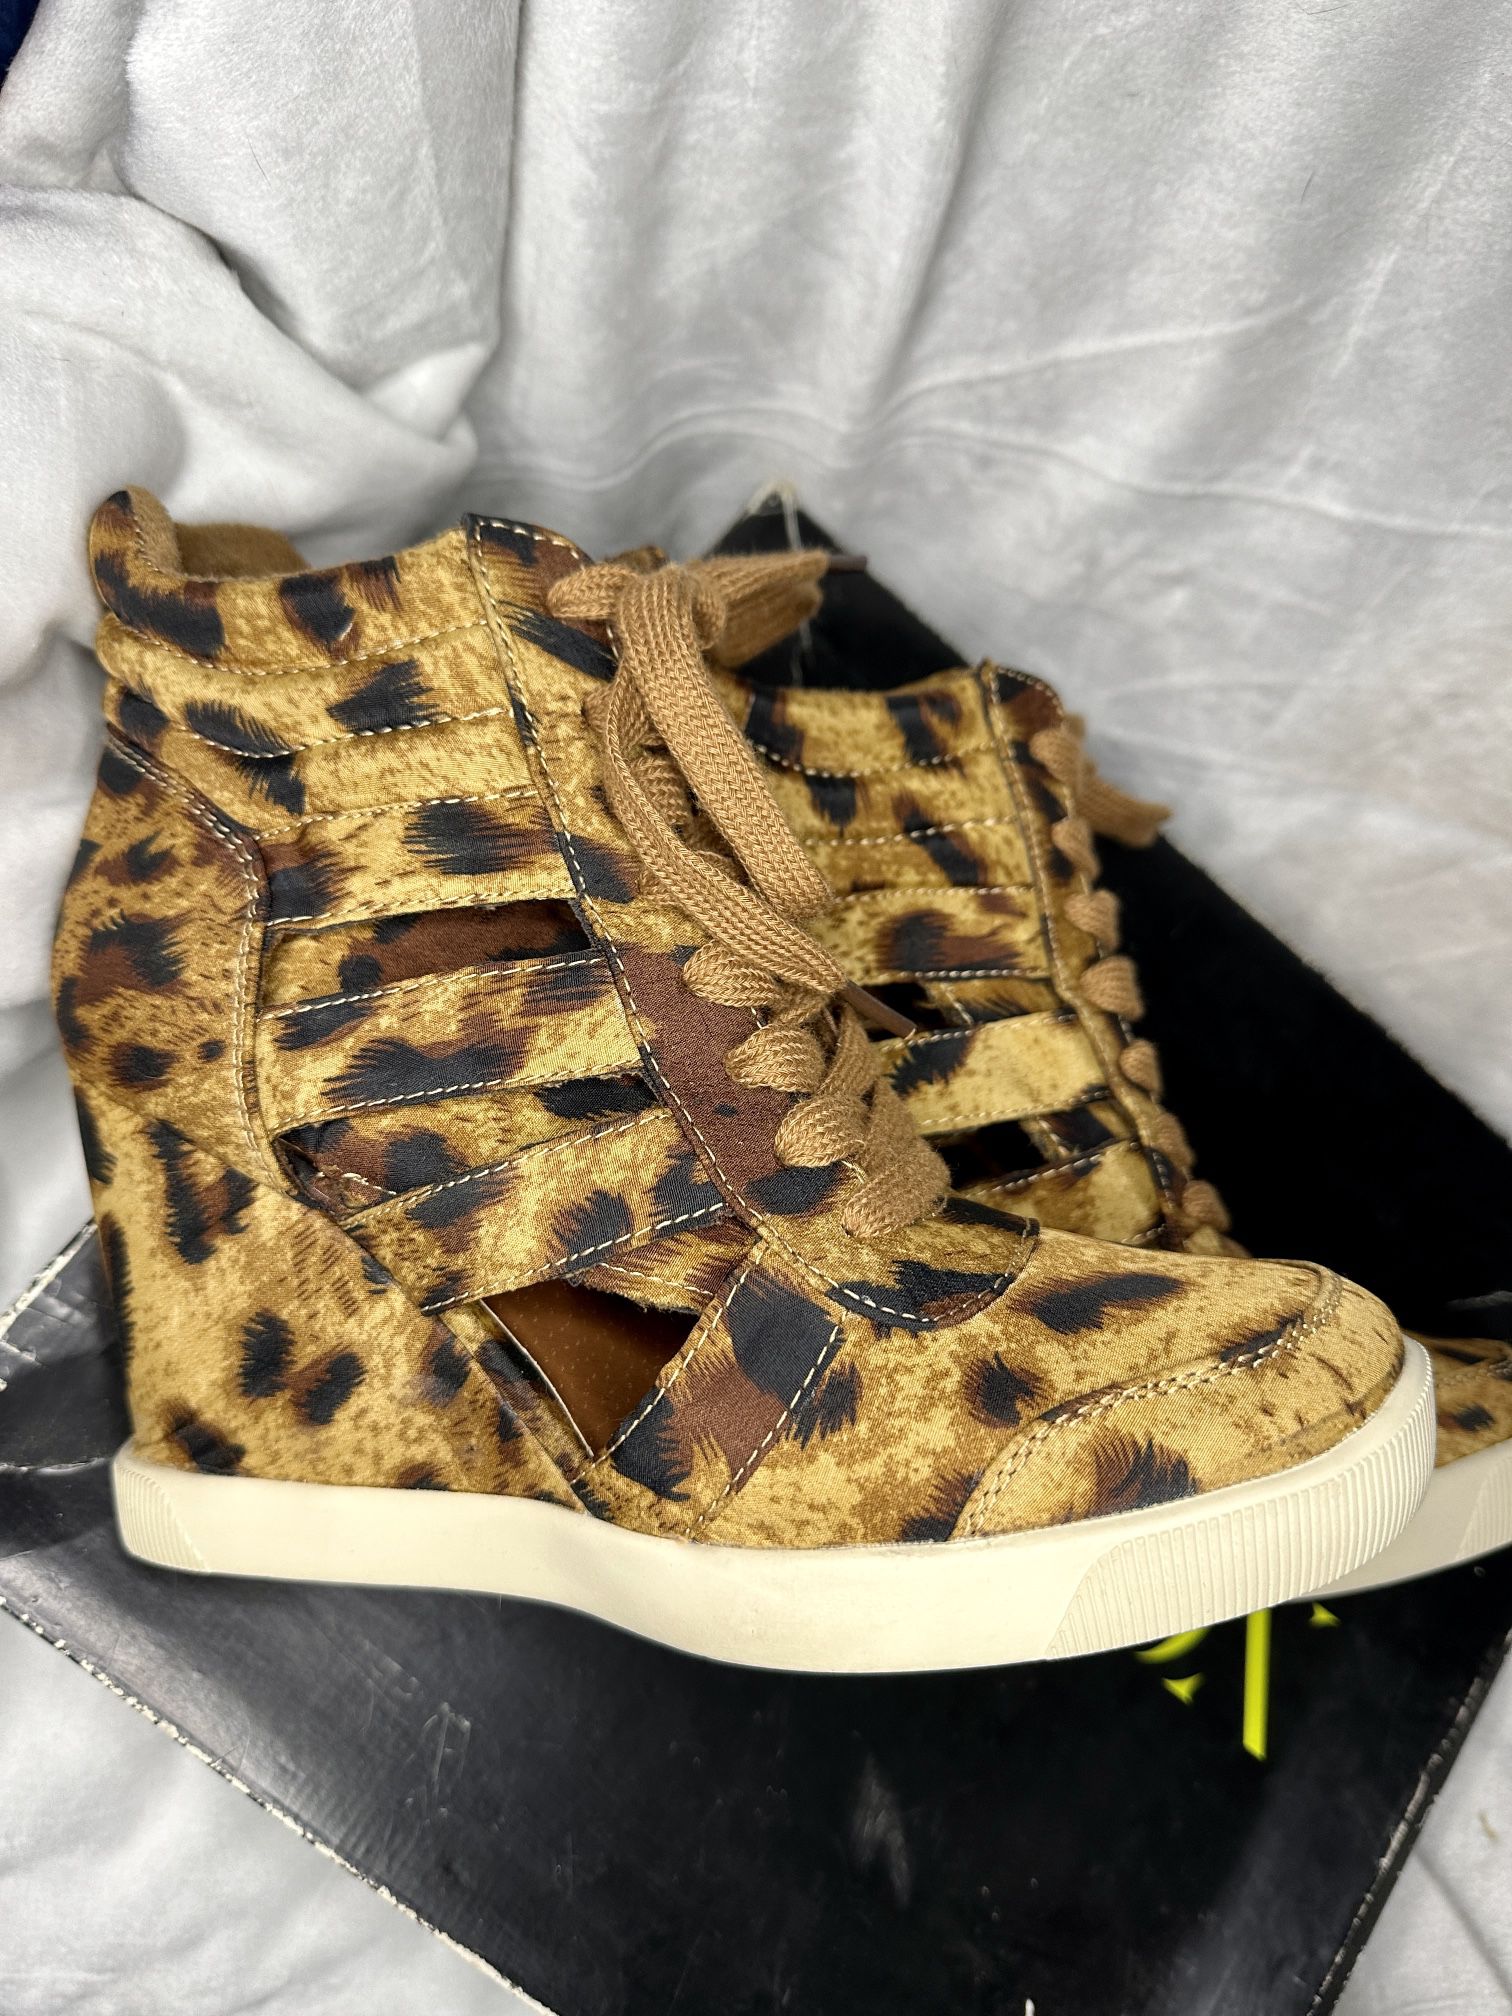 PAPER FOX Leopard Wedge Sneaker Boots - Women’s Size 7